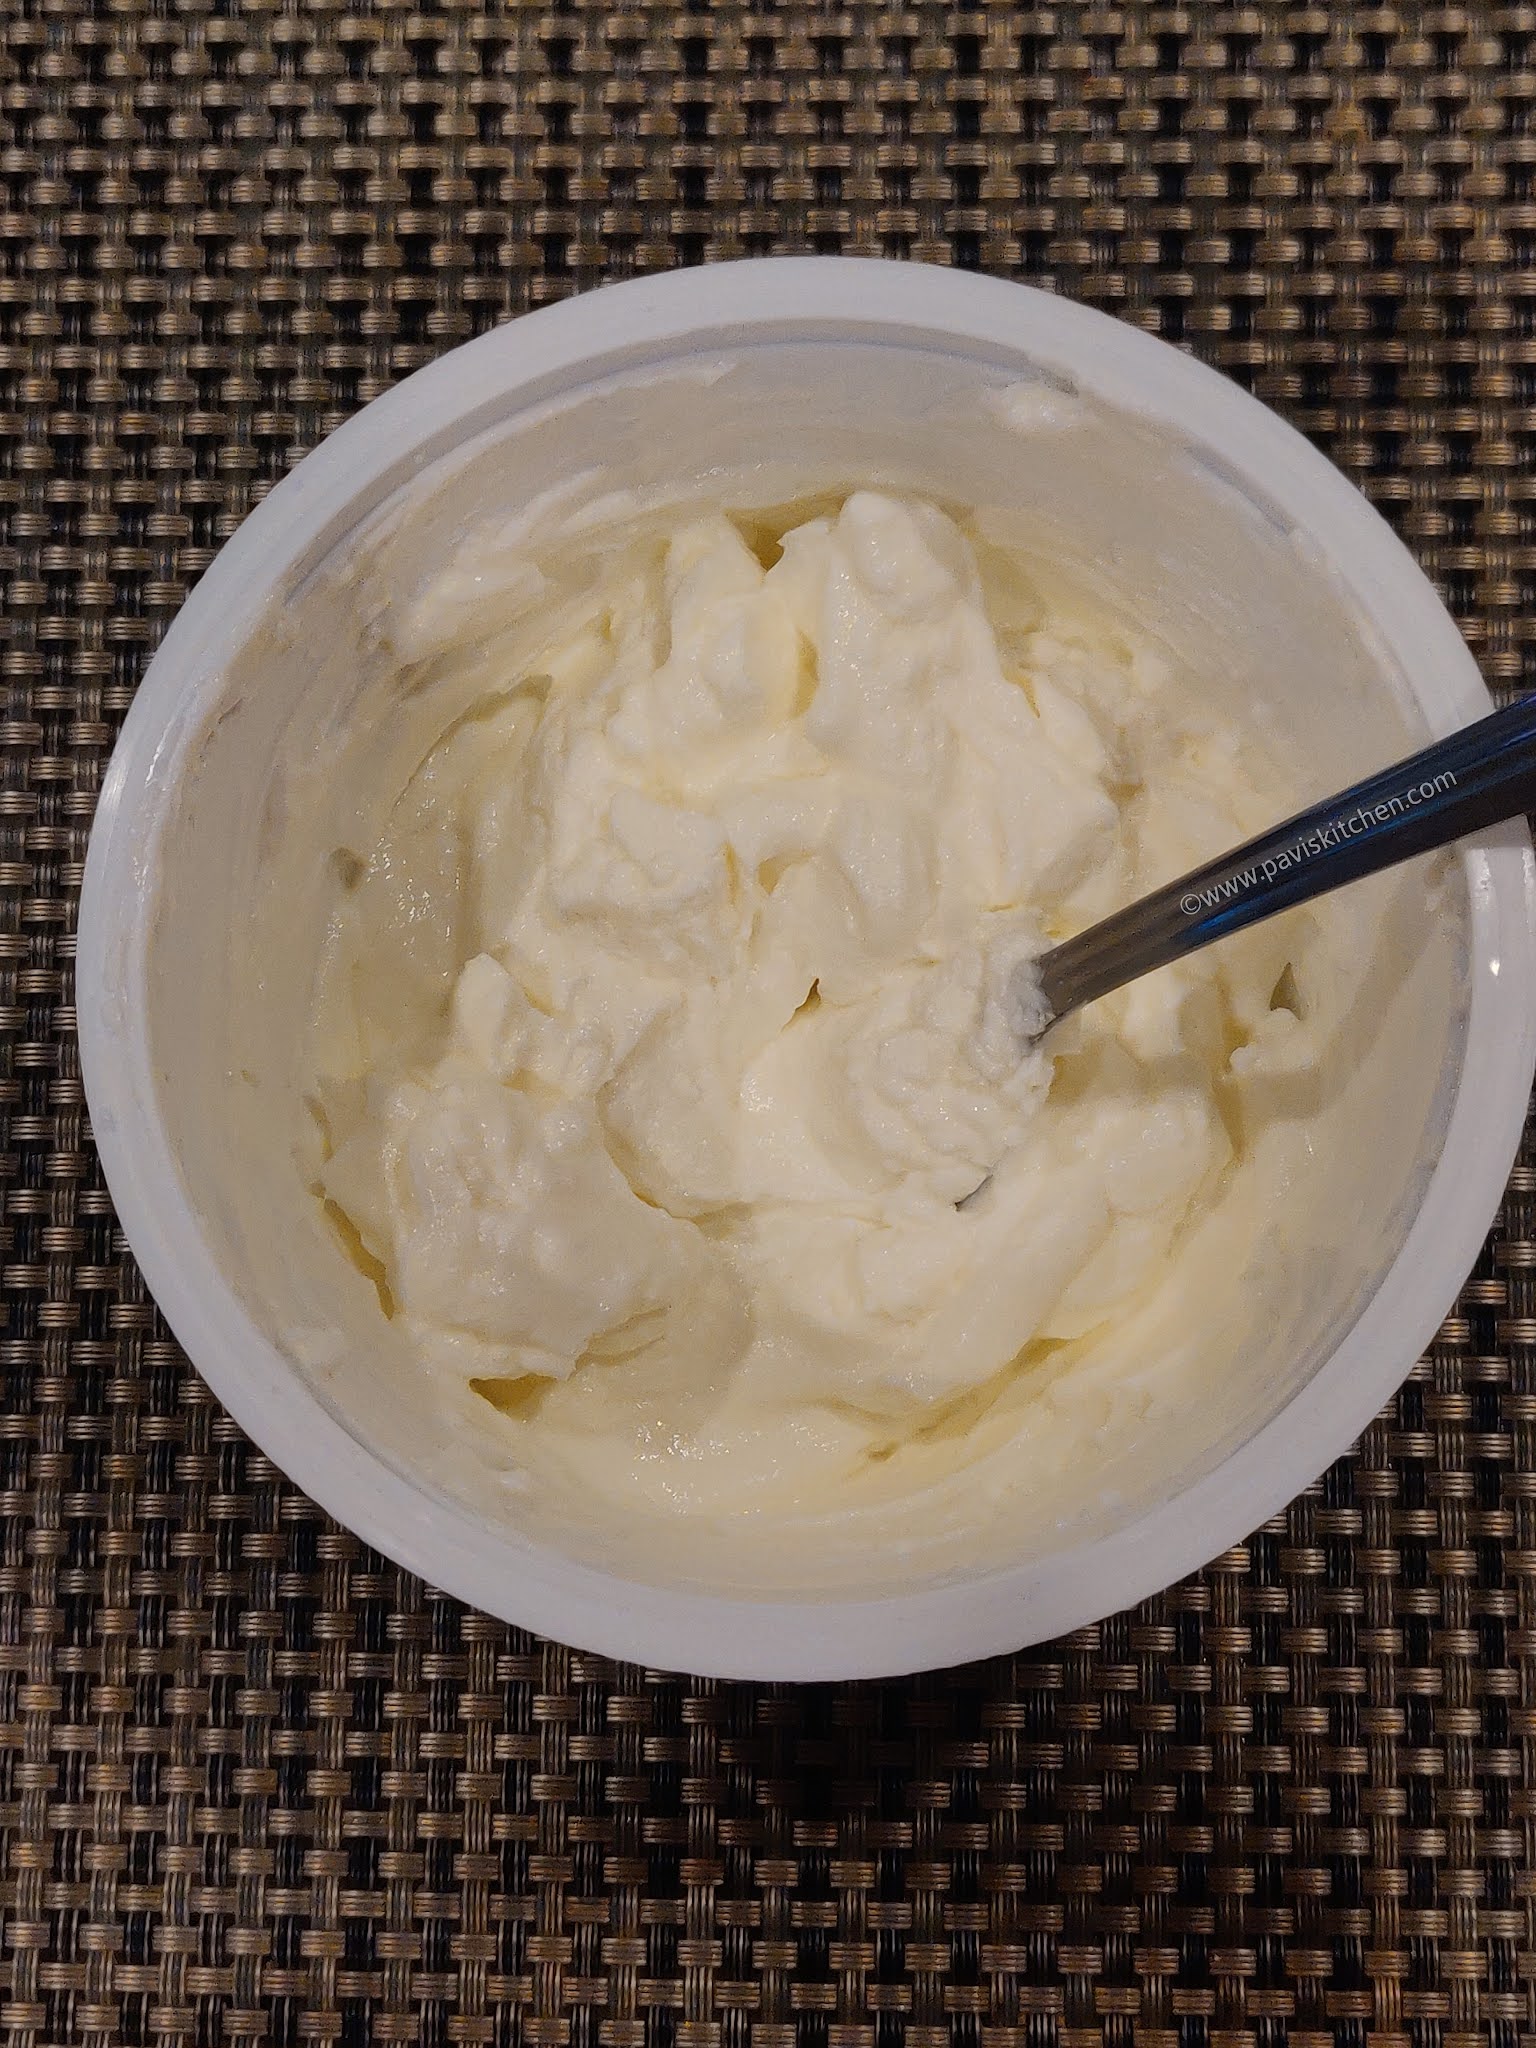 Shrikhand recipe | Gujarati shrikhand sweet | Kesar elaichi shrikhand - greek yogurt